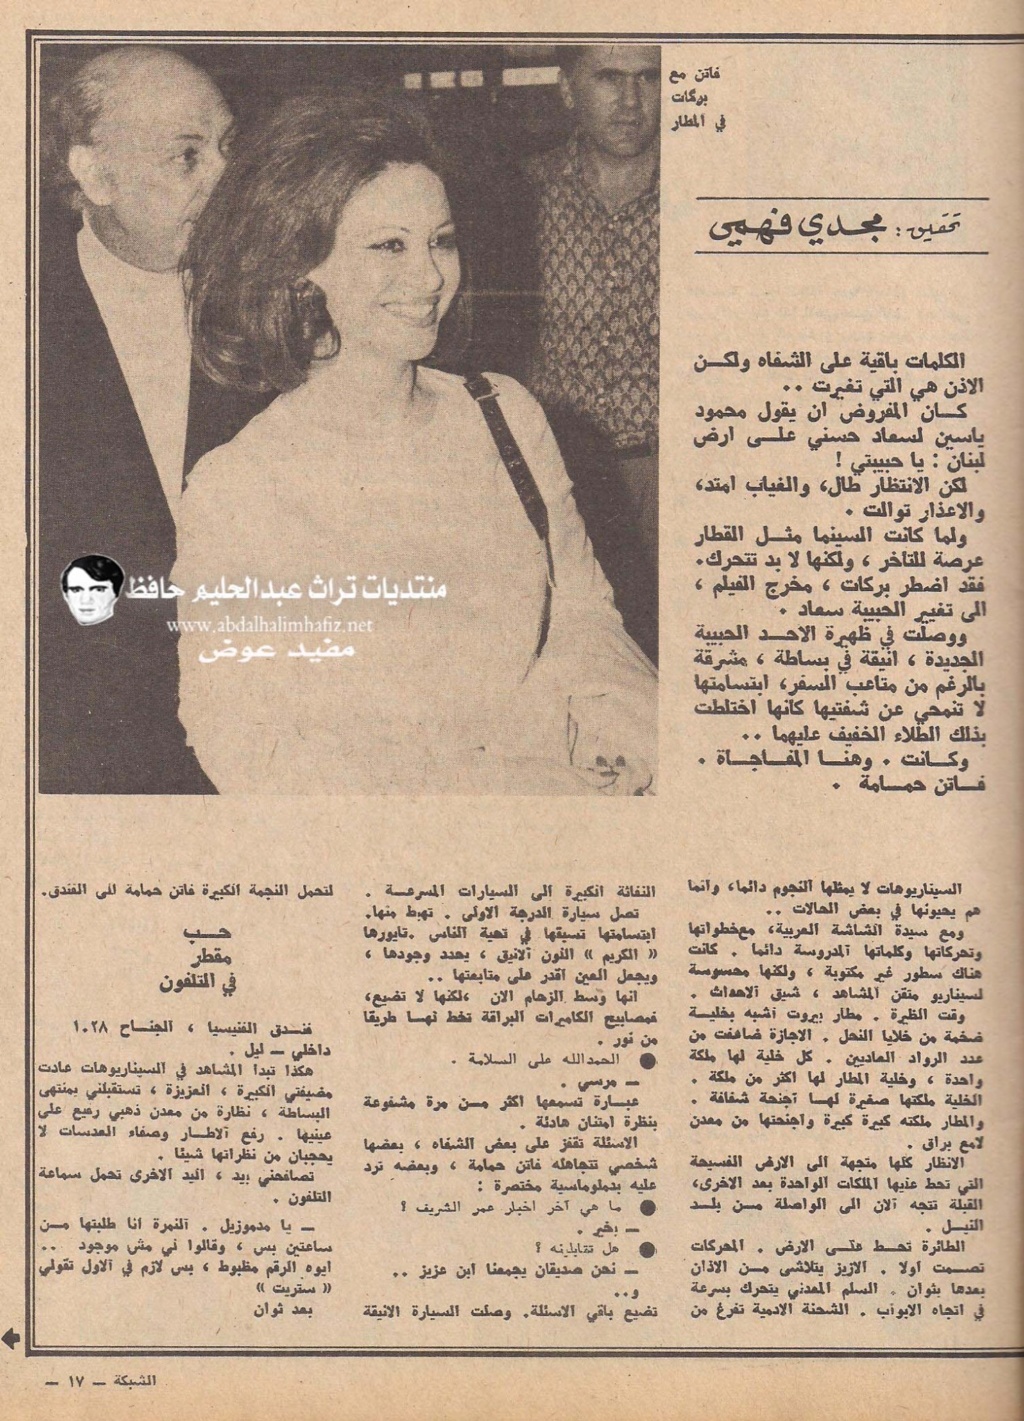 فاتن - مقال صحفي : فاتن حمامة حبيبة في لبنان بدلا من سعاد حسني 1972 م 2174